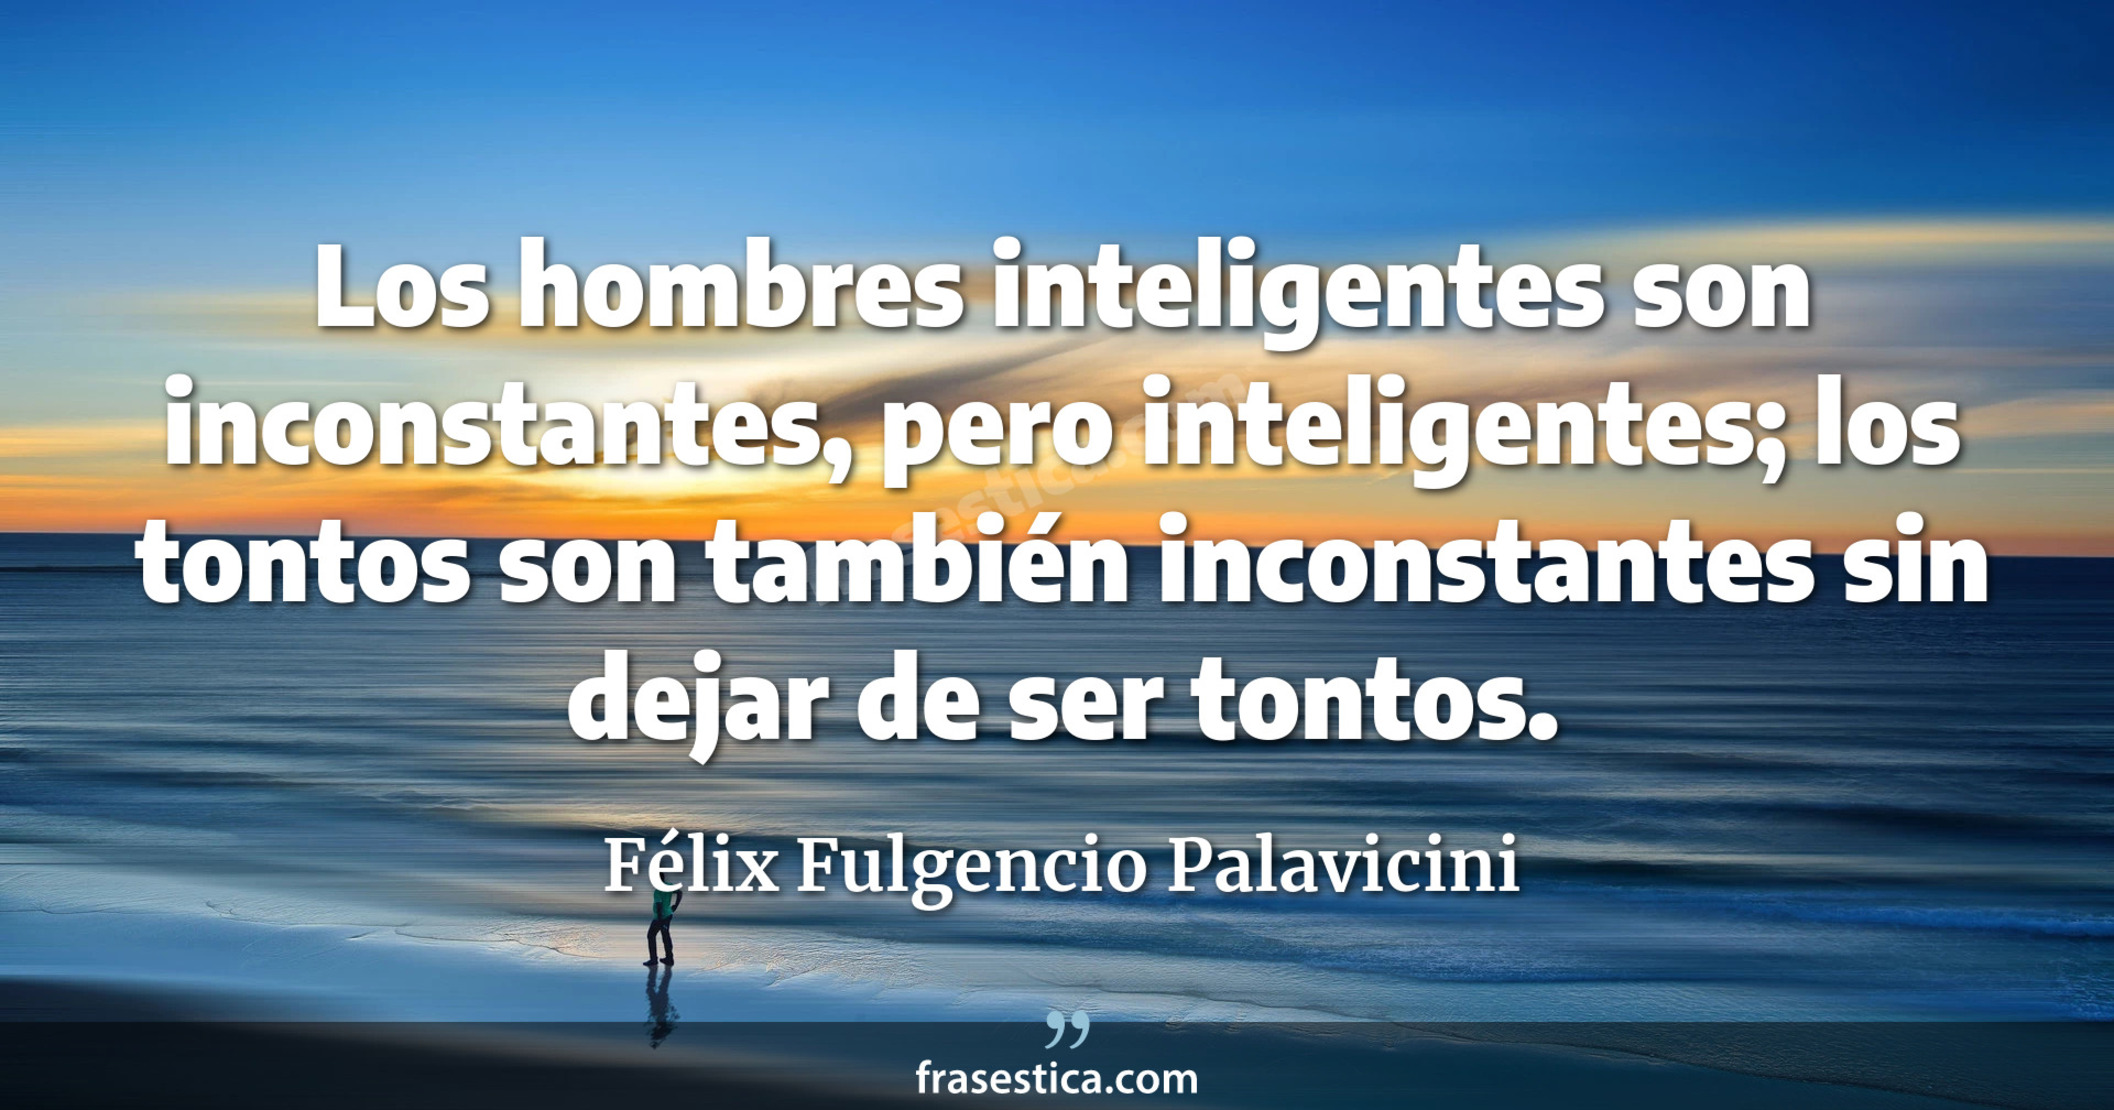 Los hombres inteligentes son inconstantes, pero inteligentes; los tontos son también inconstantes sin dejar de ser tontos. - Félix Fulgencio Palavicini